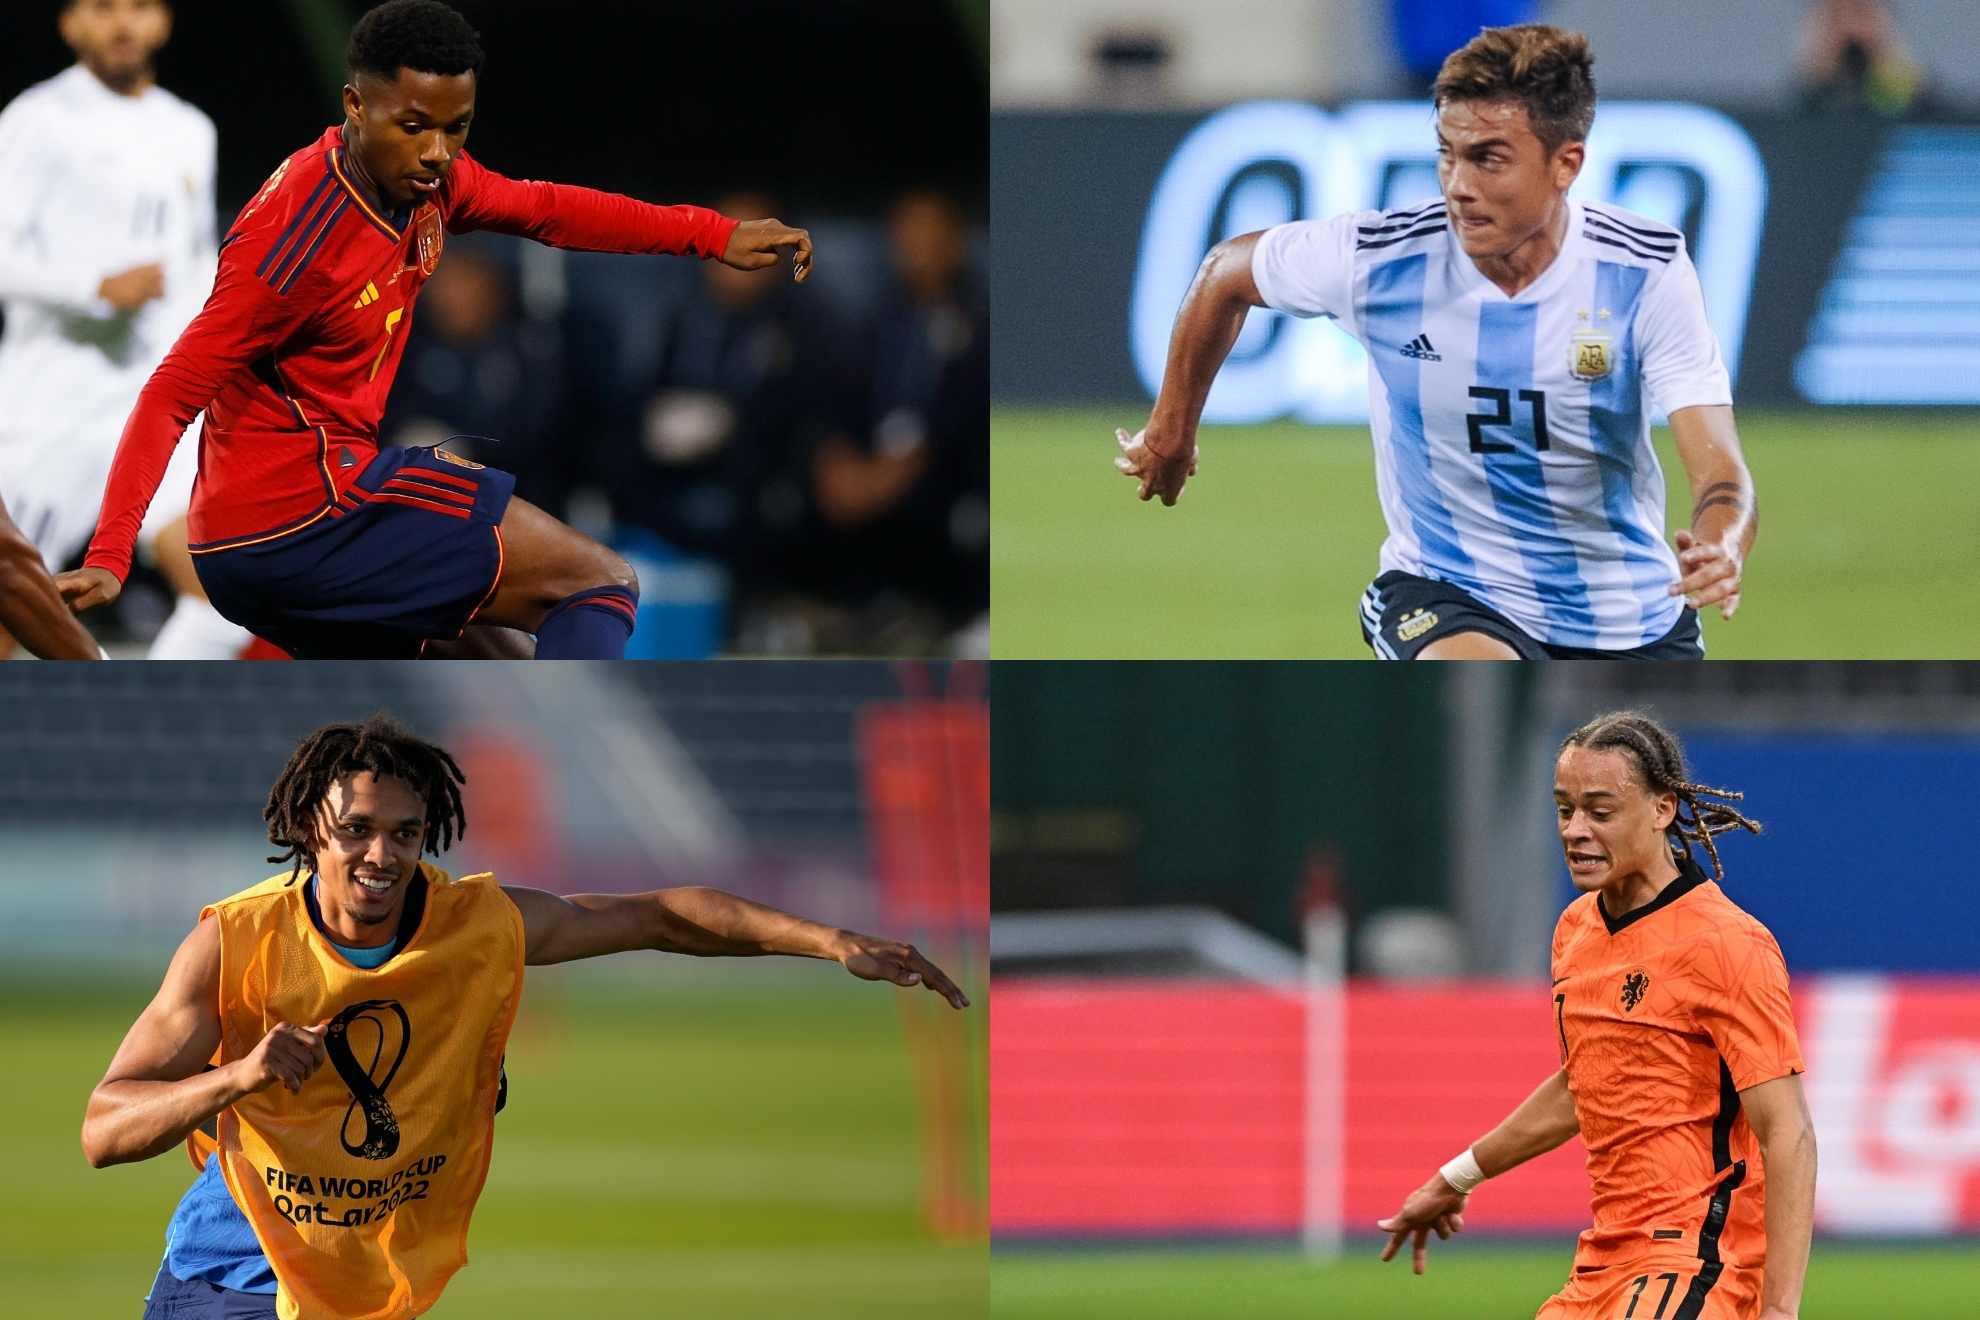 Los 16 futbolistas más destacados que aún no han jugado en el Mundial de Qatar 2022